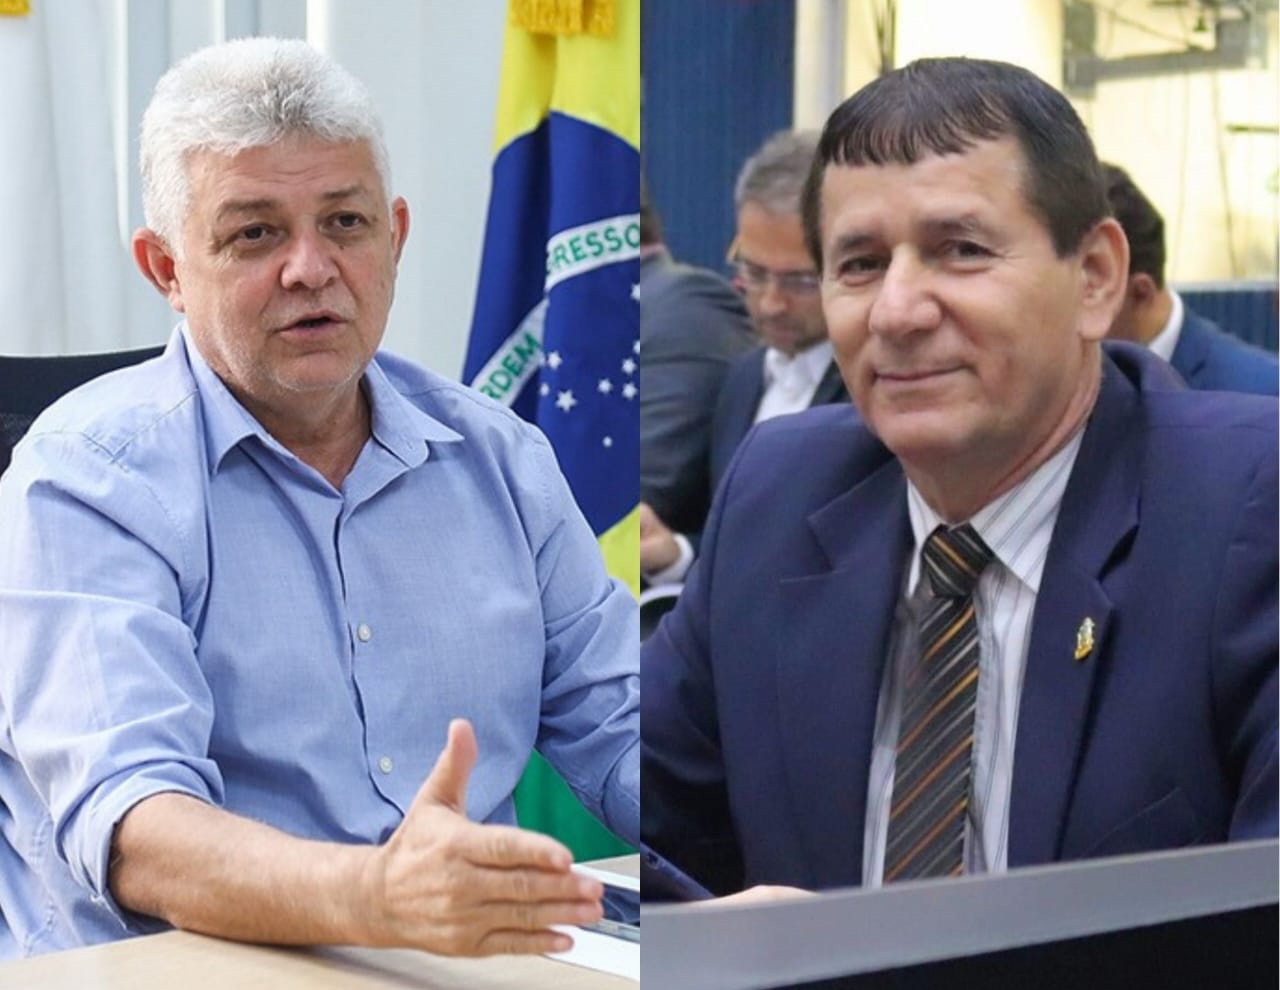 Alonso Oliveira e Roberto Sabino tomam posse como vereadores na Câmara Municipal de Manaus